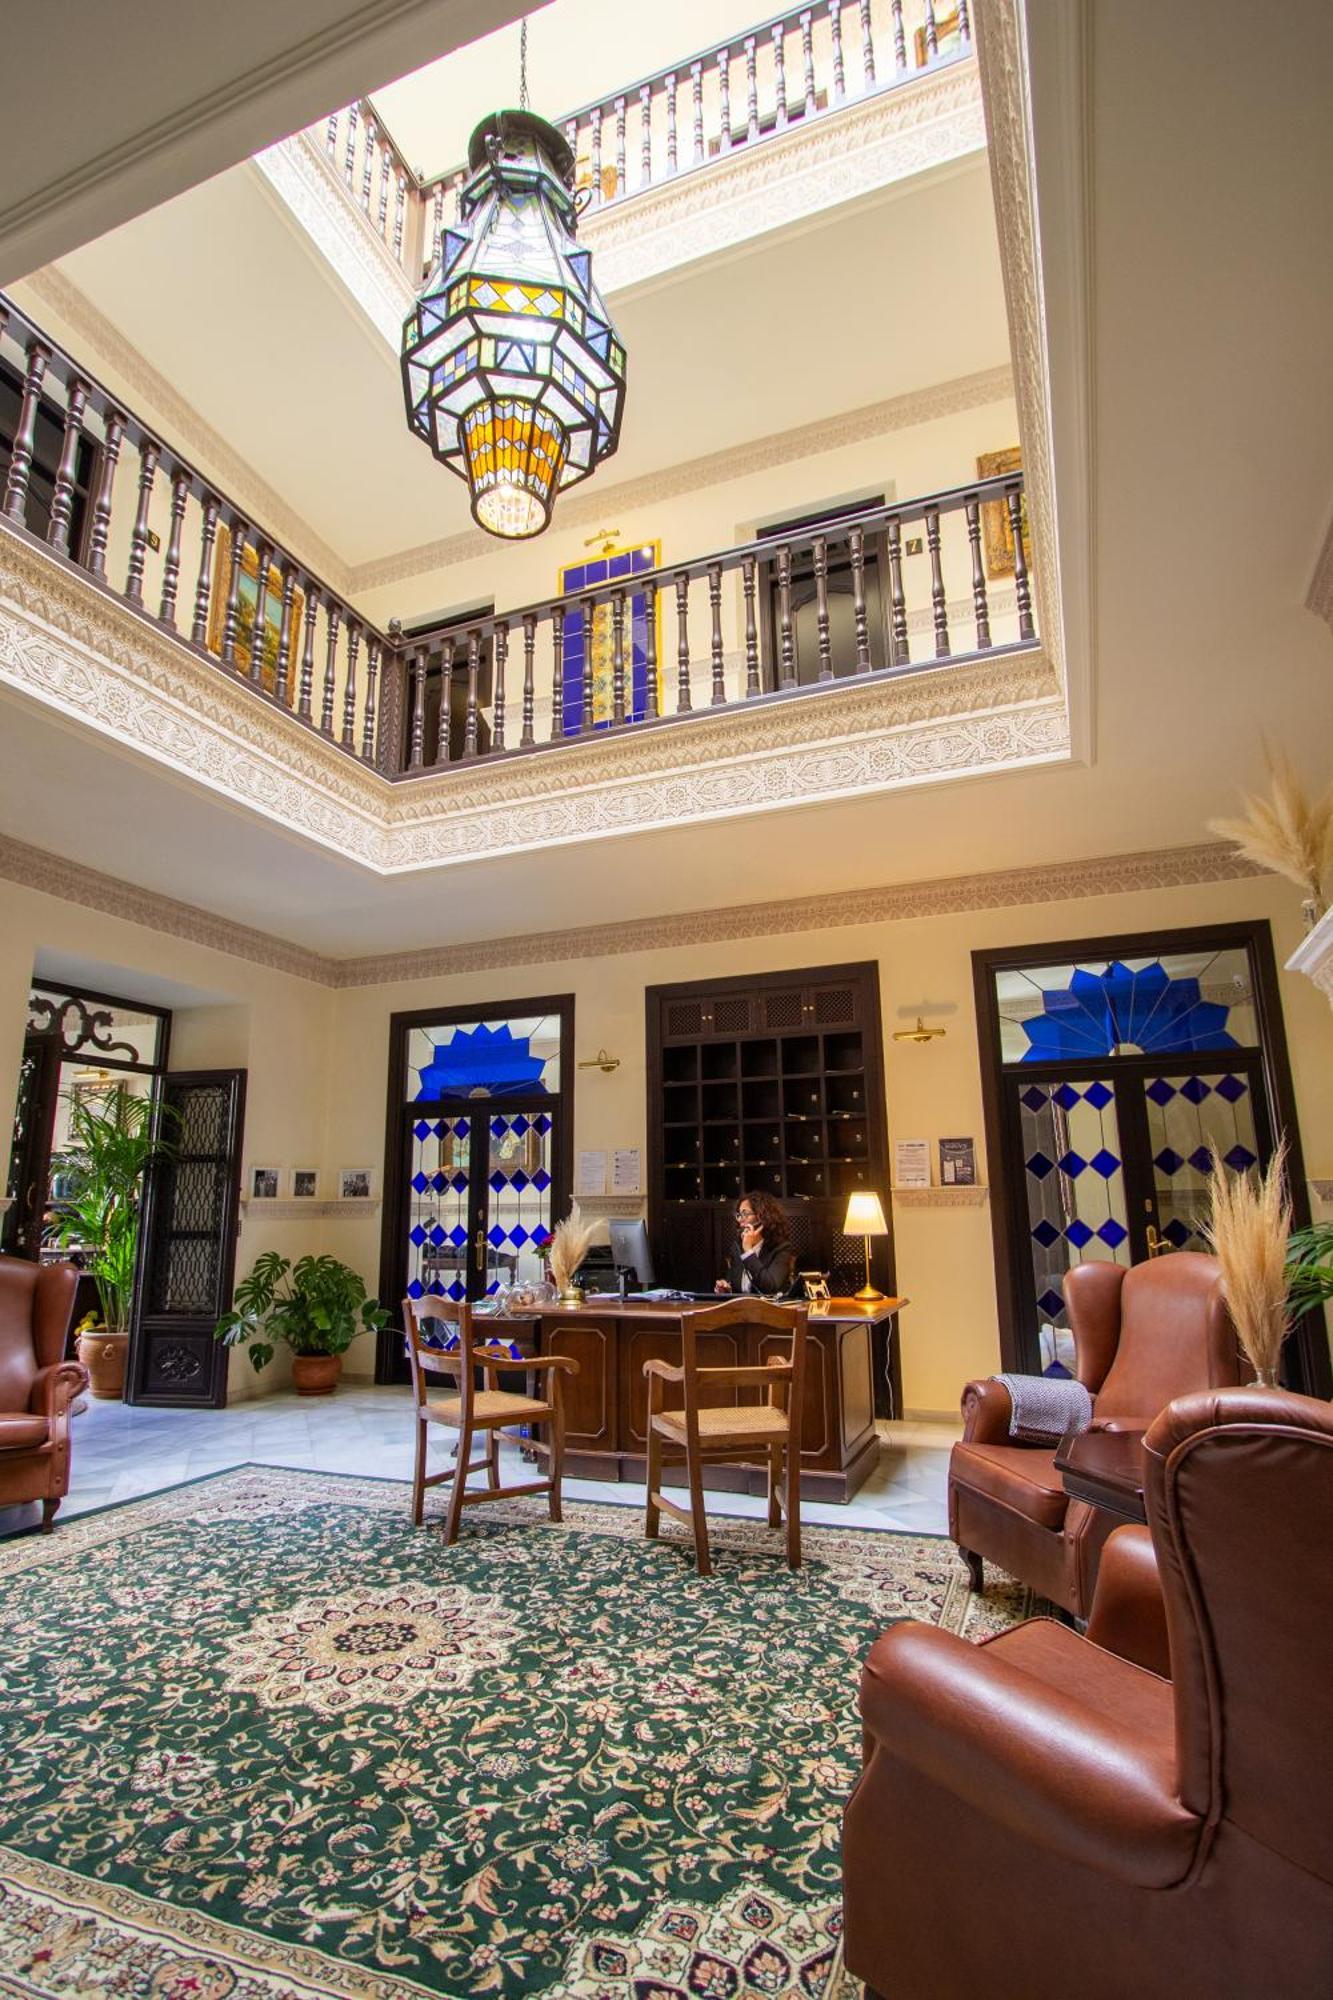 Hotel Palacio De Hemingway Ronda Eksteriør billede